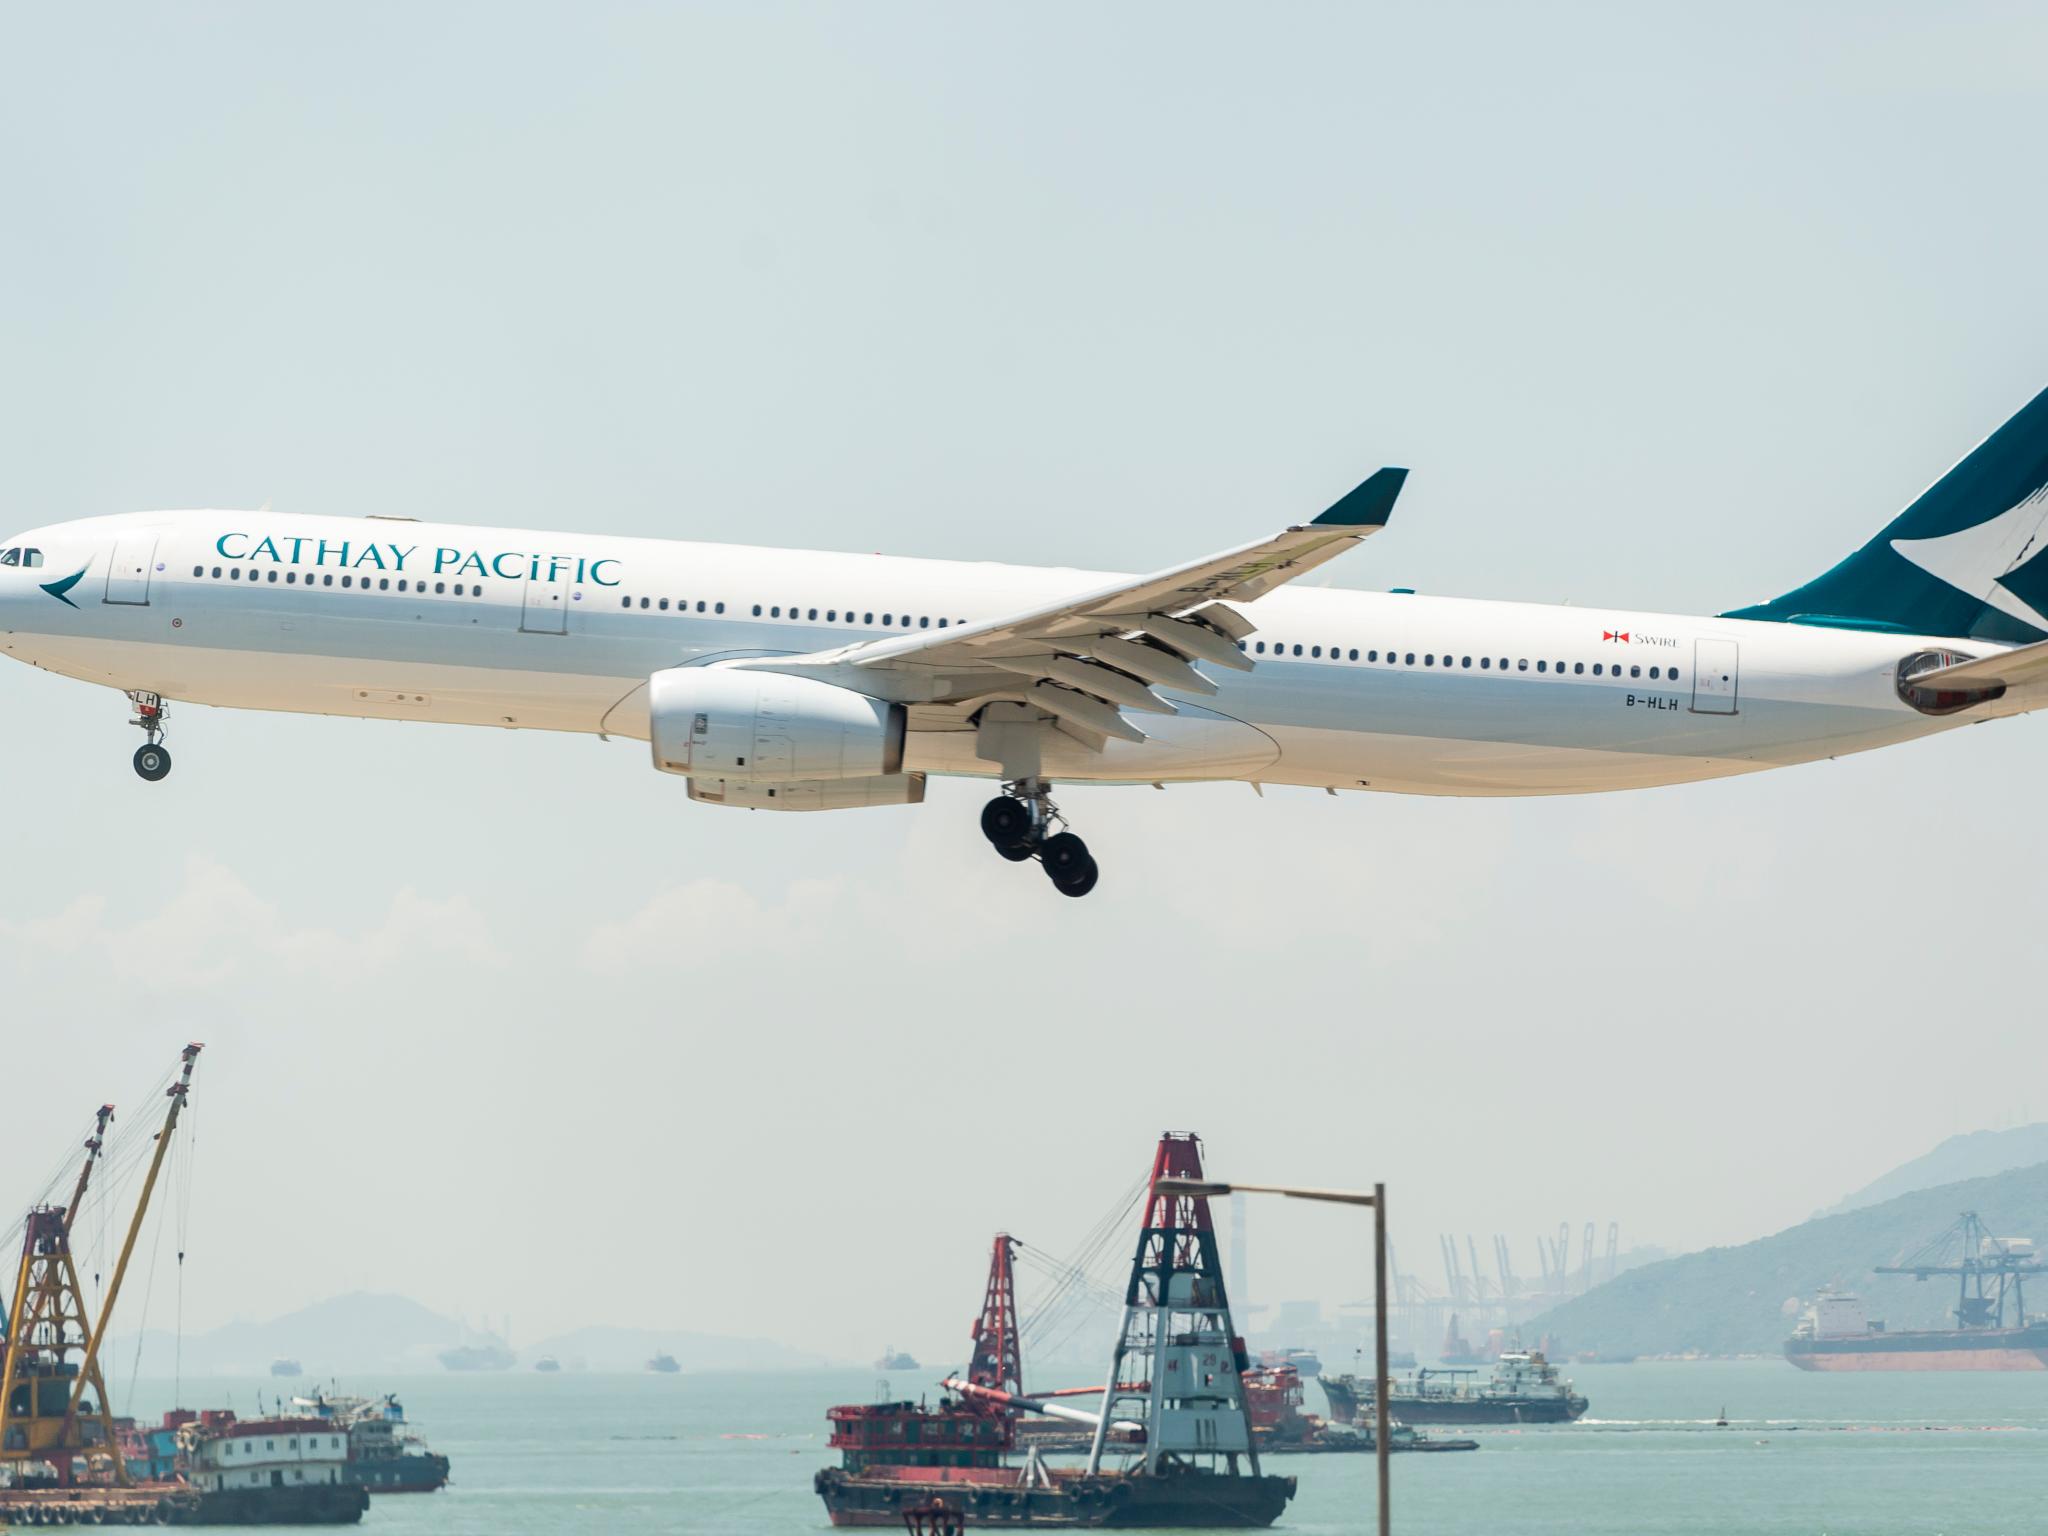  airbus-hits-jackpot-hong-kong-based-cathay-pacifics-466b-splurge-on-a320neo-jets 